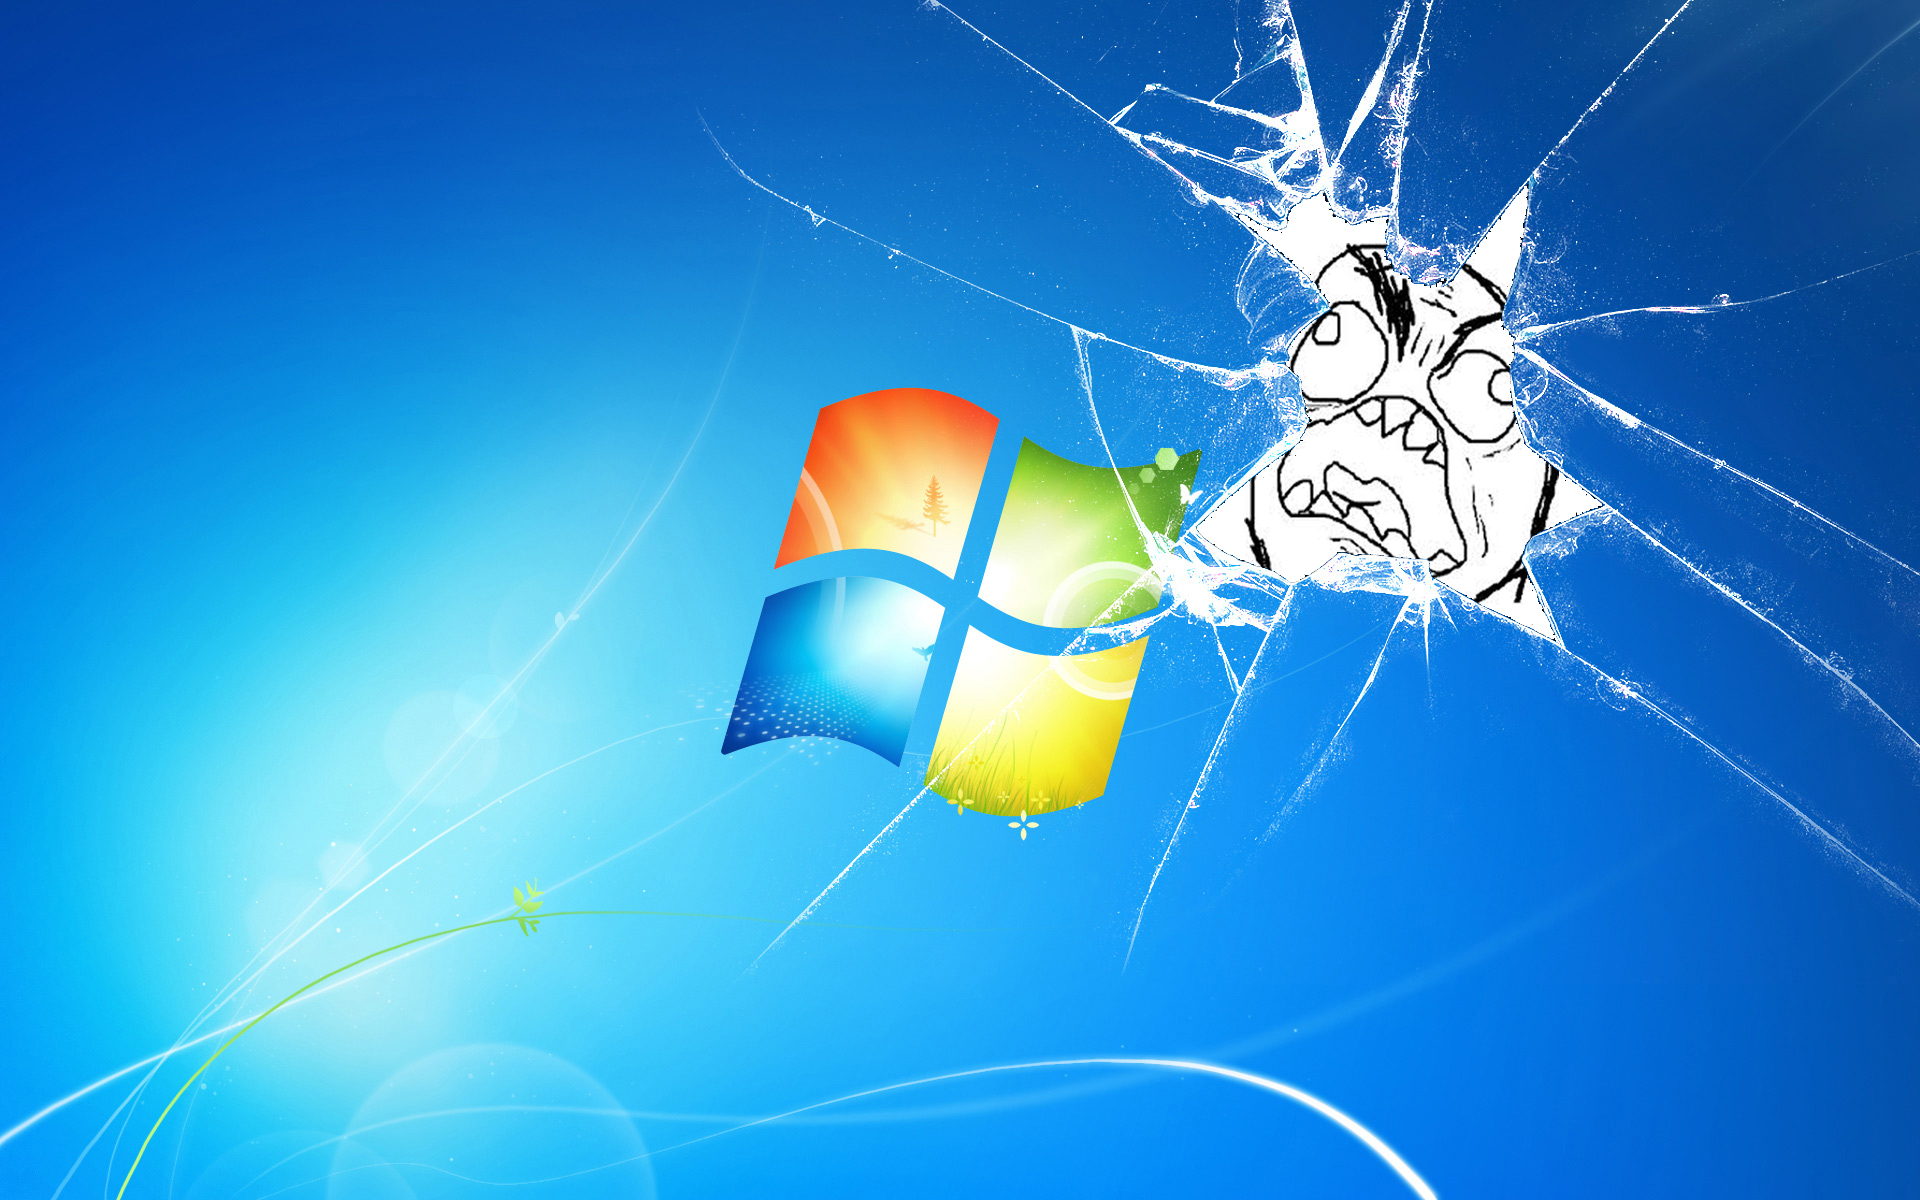 сломанный экран, Microsoft Windows, логотипы - обои на рабочий стол